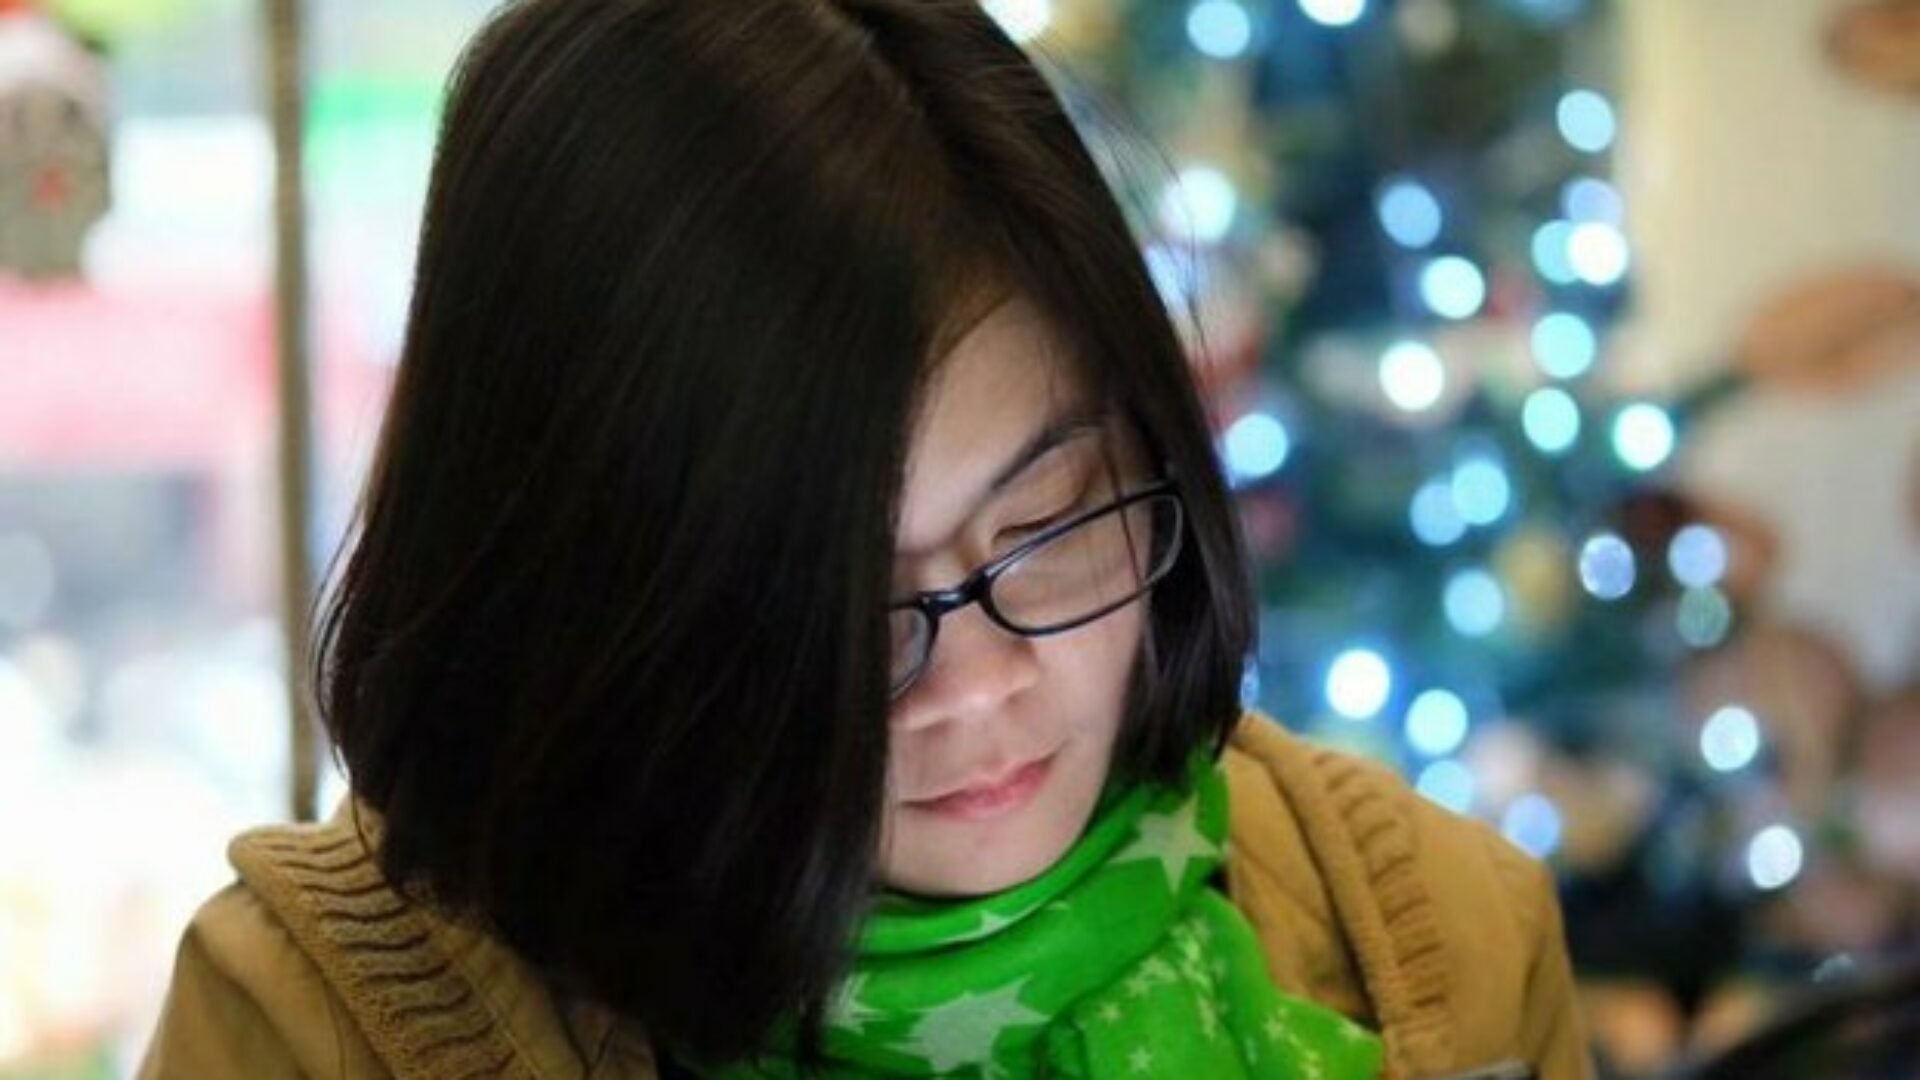 (Tiếng Việt) Nhà hoạt động trẻ Đinh Thảo: “Tôi muốn tìm một phiên bản khác của mình”